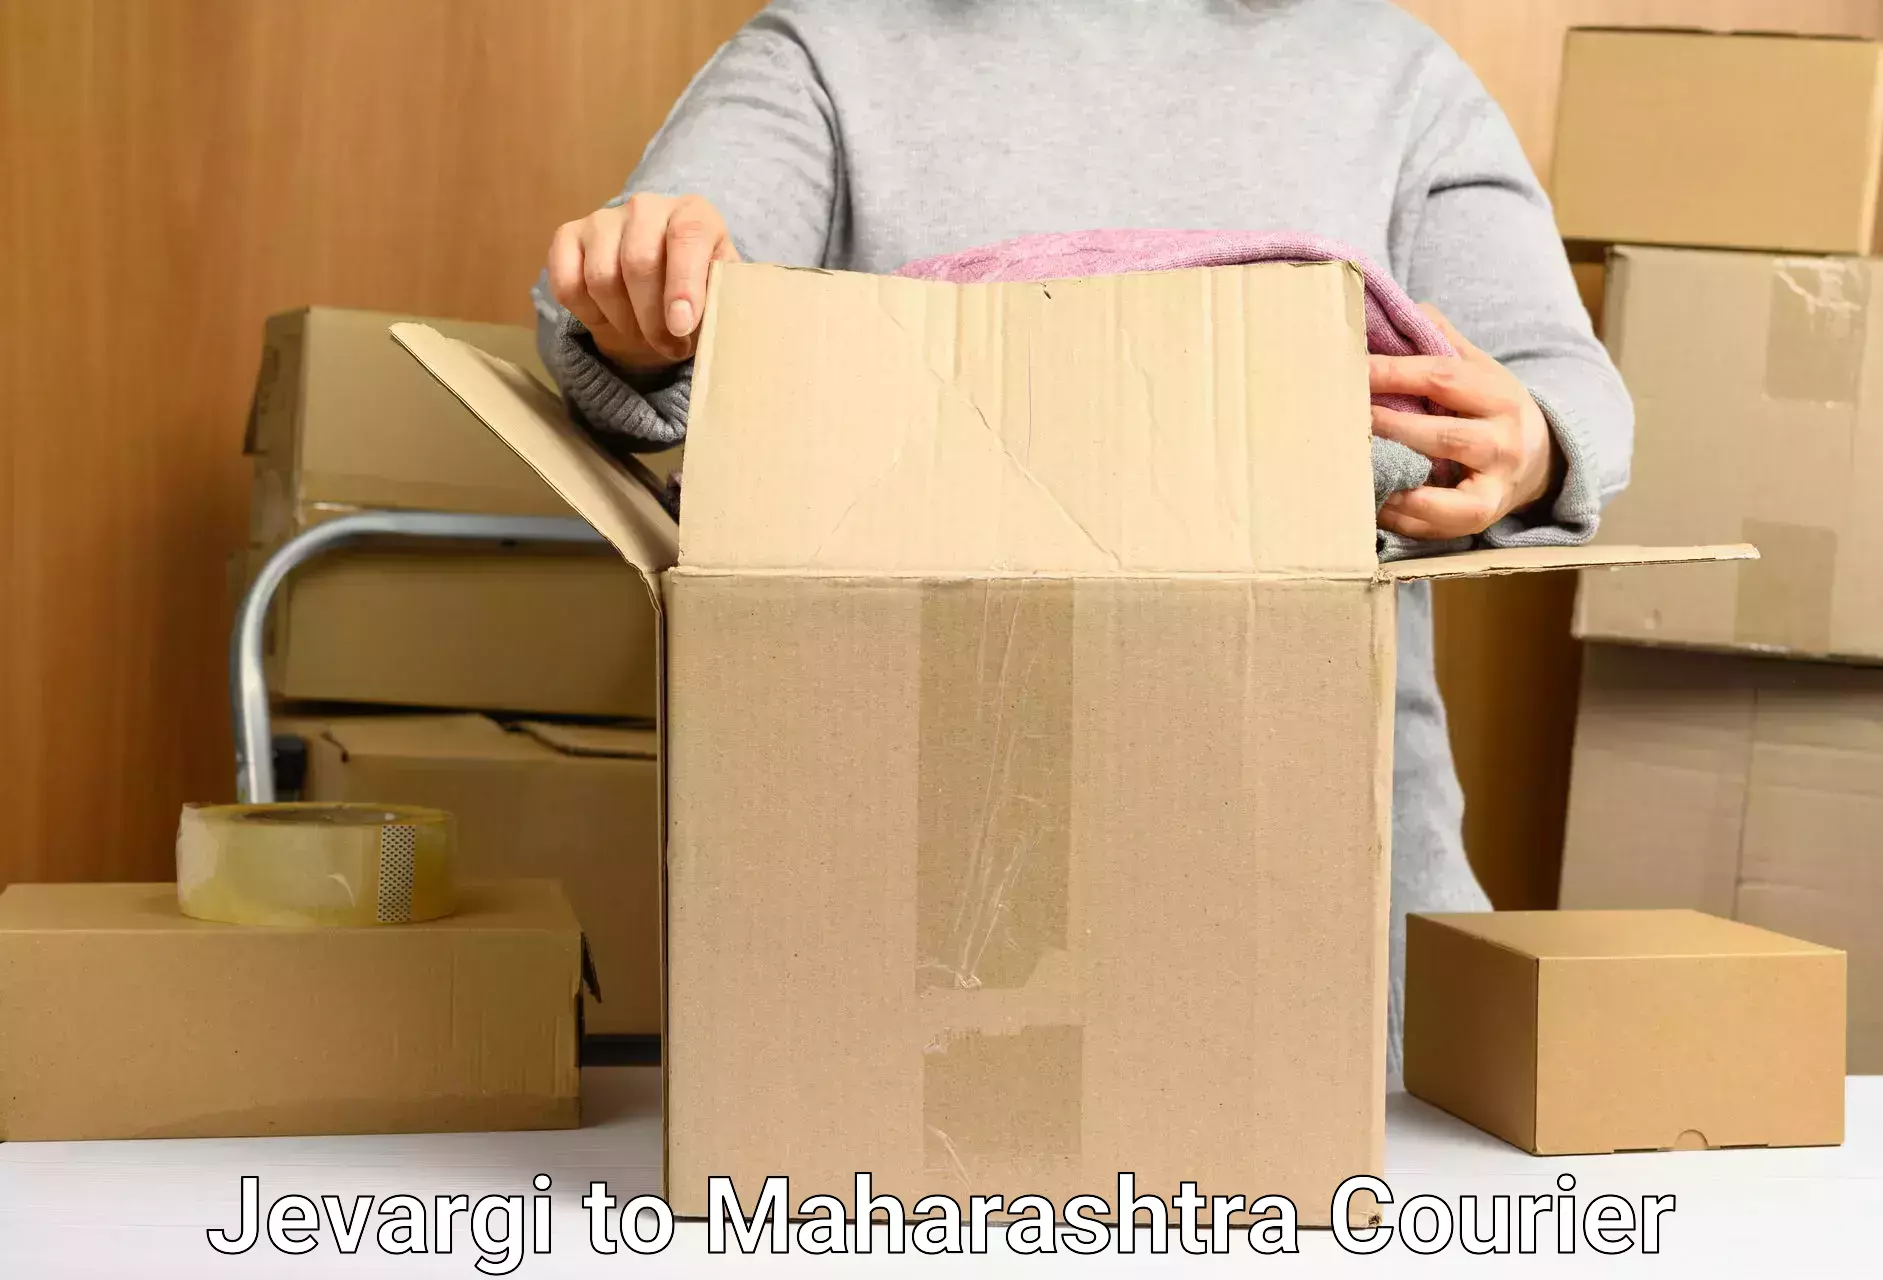 Overnight delivery services Jevargi to Maharashtra